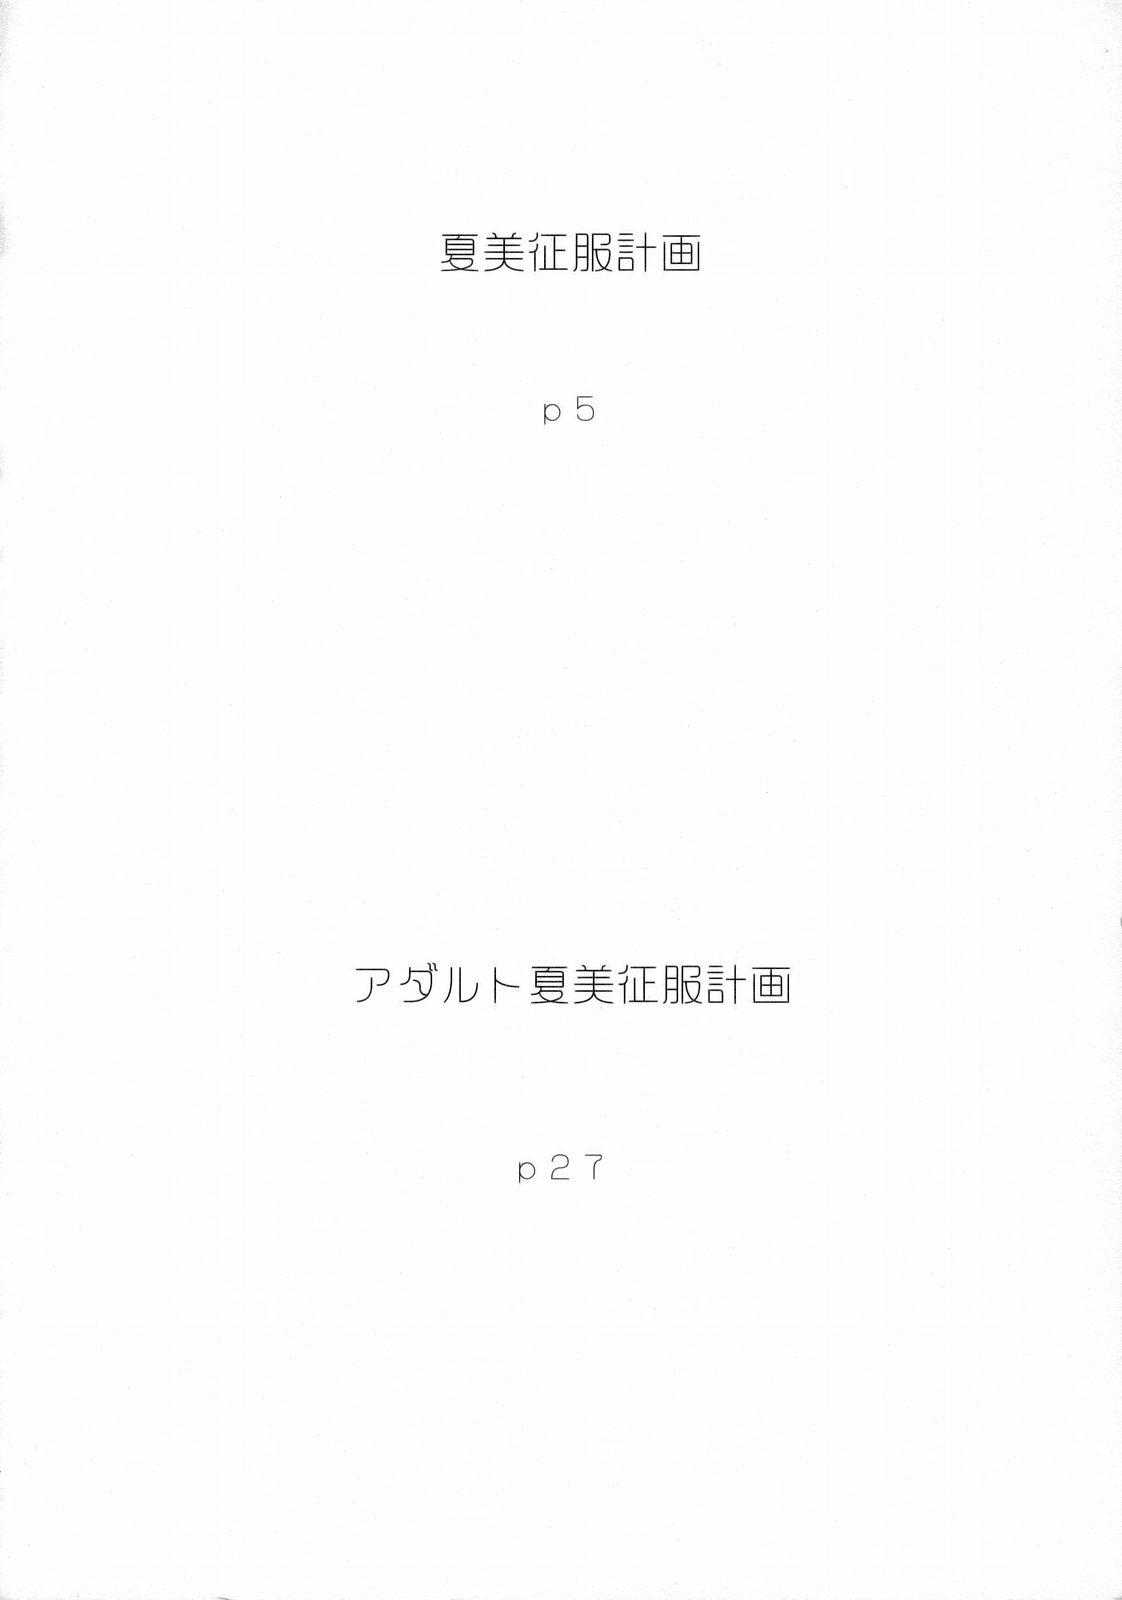 Latex Natsumi Seifuku Keikaku | Natsumi Uniform Plan - Keroro gunsou Sologirl - Page 3